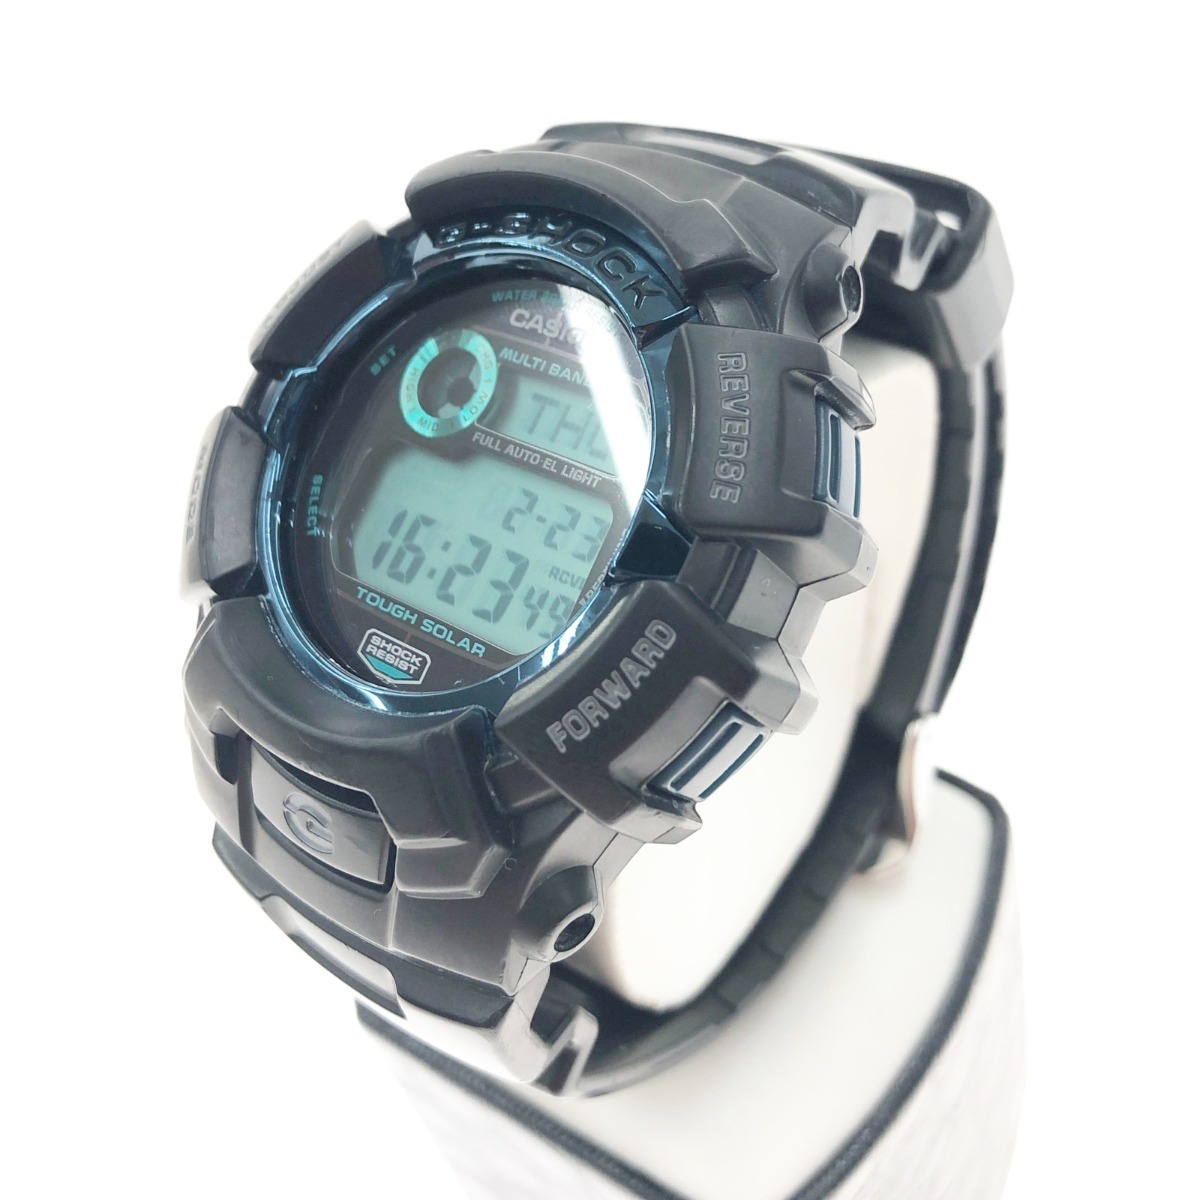 〇〇 CASIO カシオ ファイアー・パッケージ タフソーラー 腕時計 GW-2310FB ブラック x ブルー やや傷や汚れあり_画像2